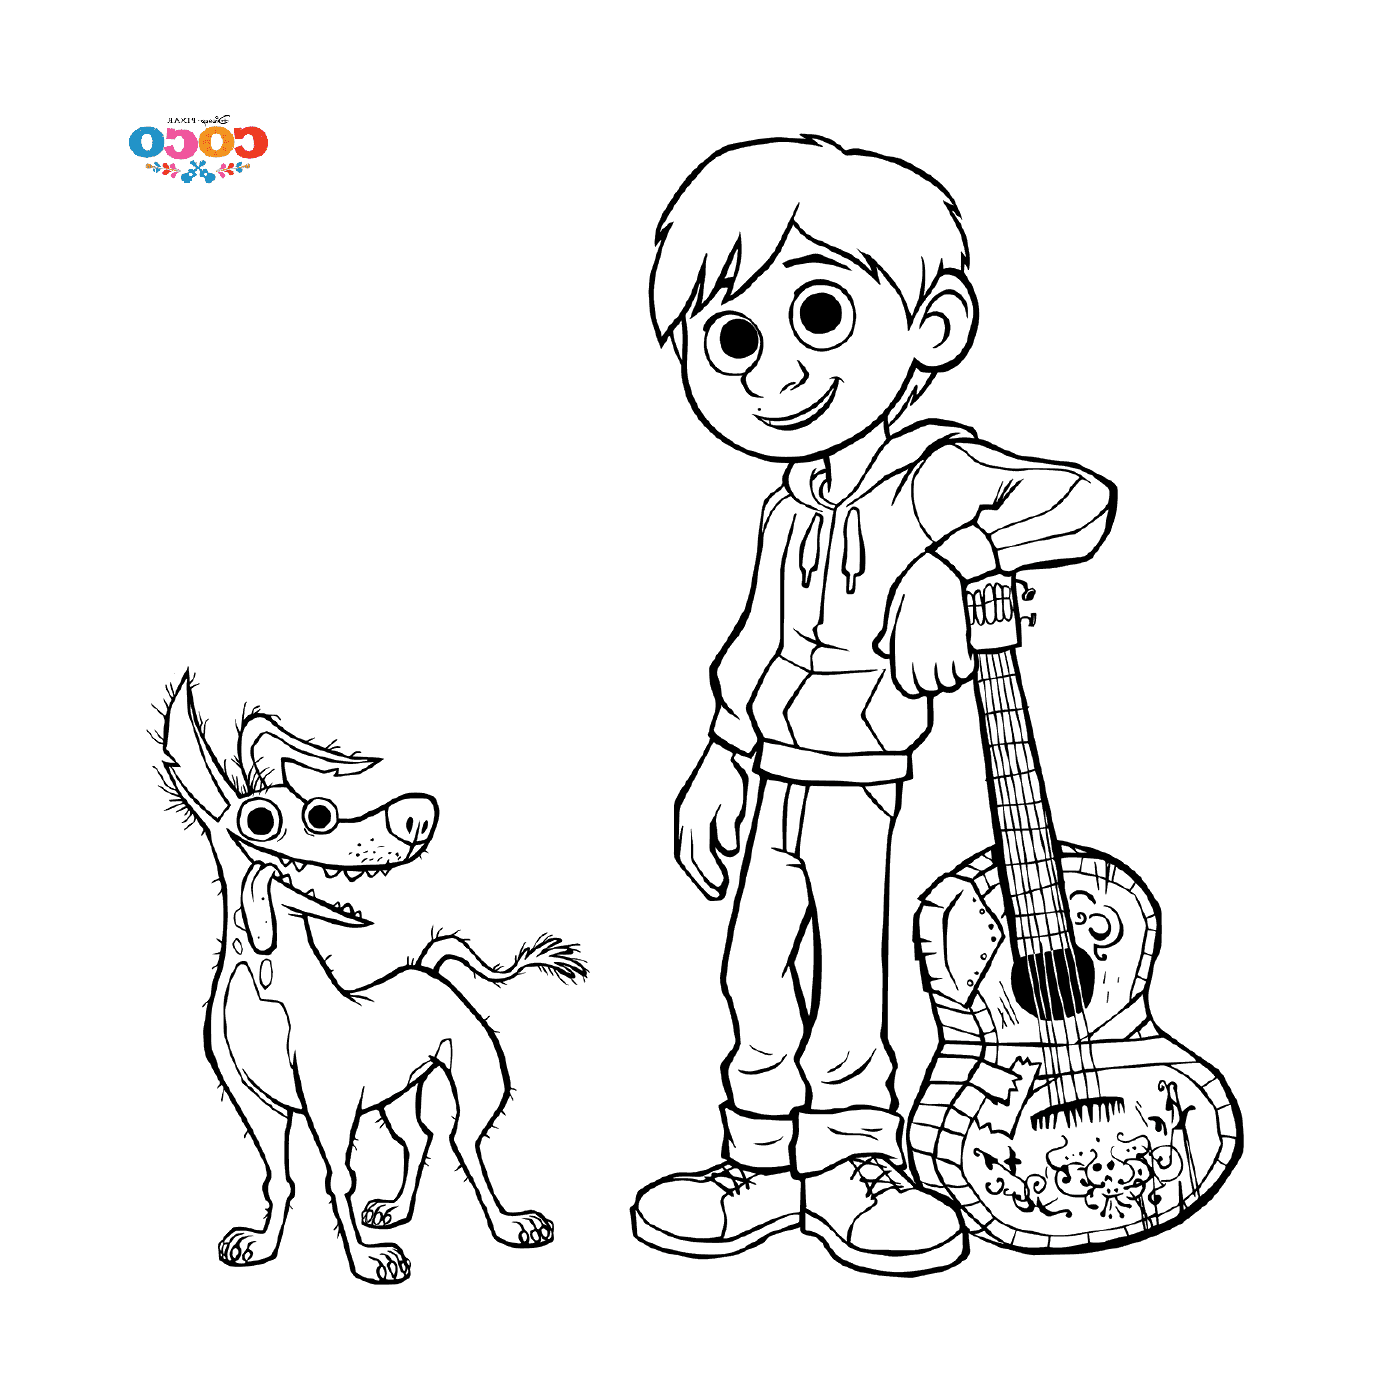  Miguel e Dante il Cane, a Disney Coco 